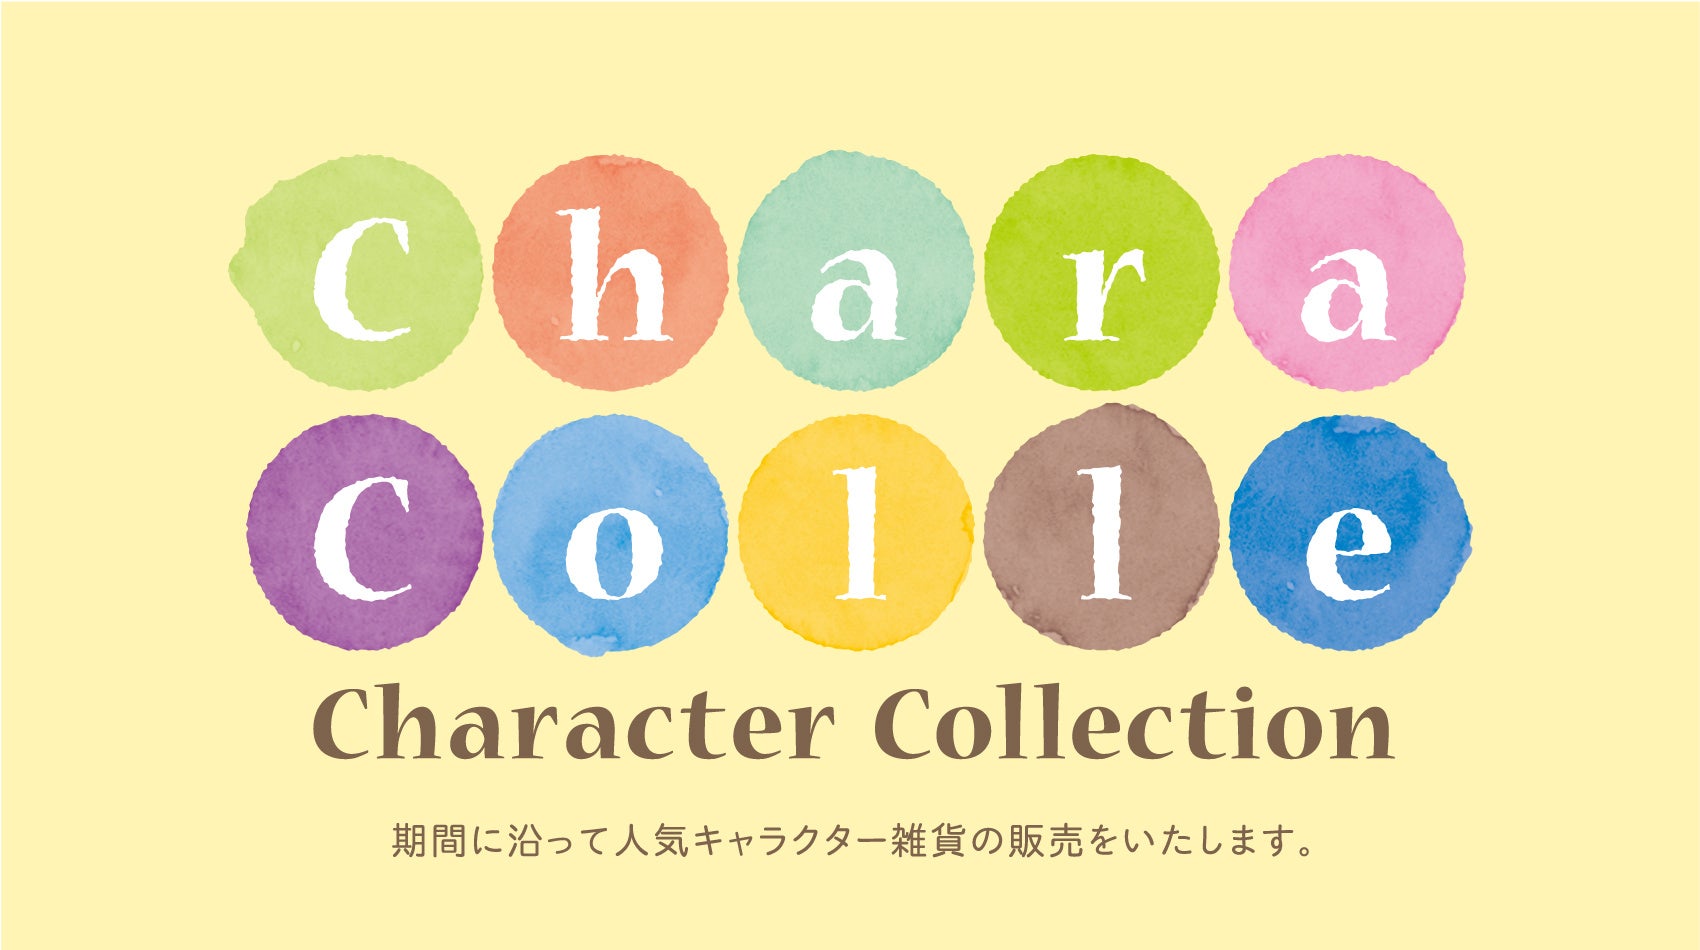 渋谷サクラステージに人気キャラクター雑貨のPOP UP SHOP専門店「キャラコレ」が7月25日にオープン